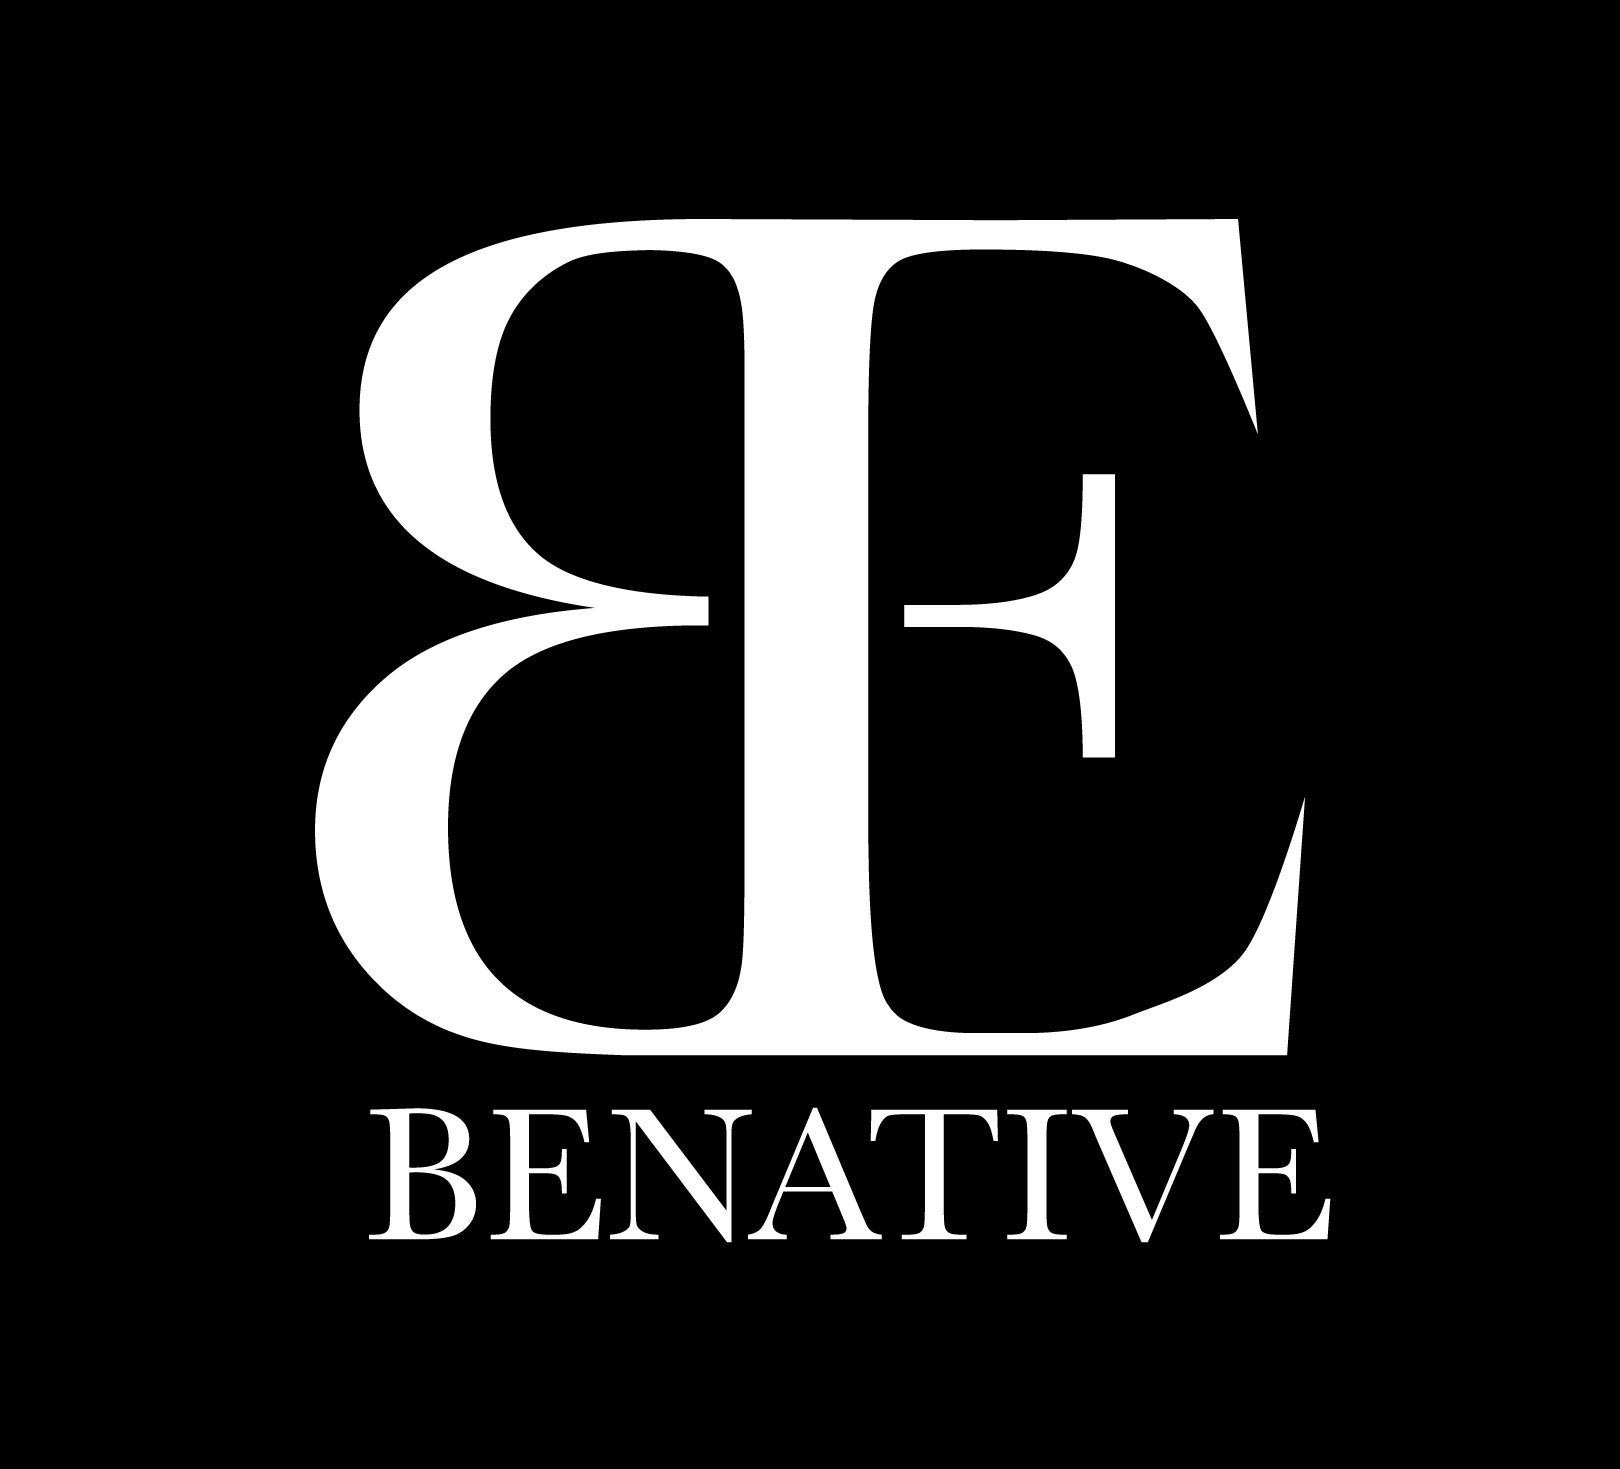 benative是什么牌子_benative品牌怎么样?